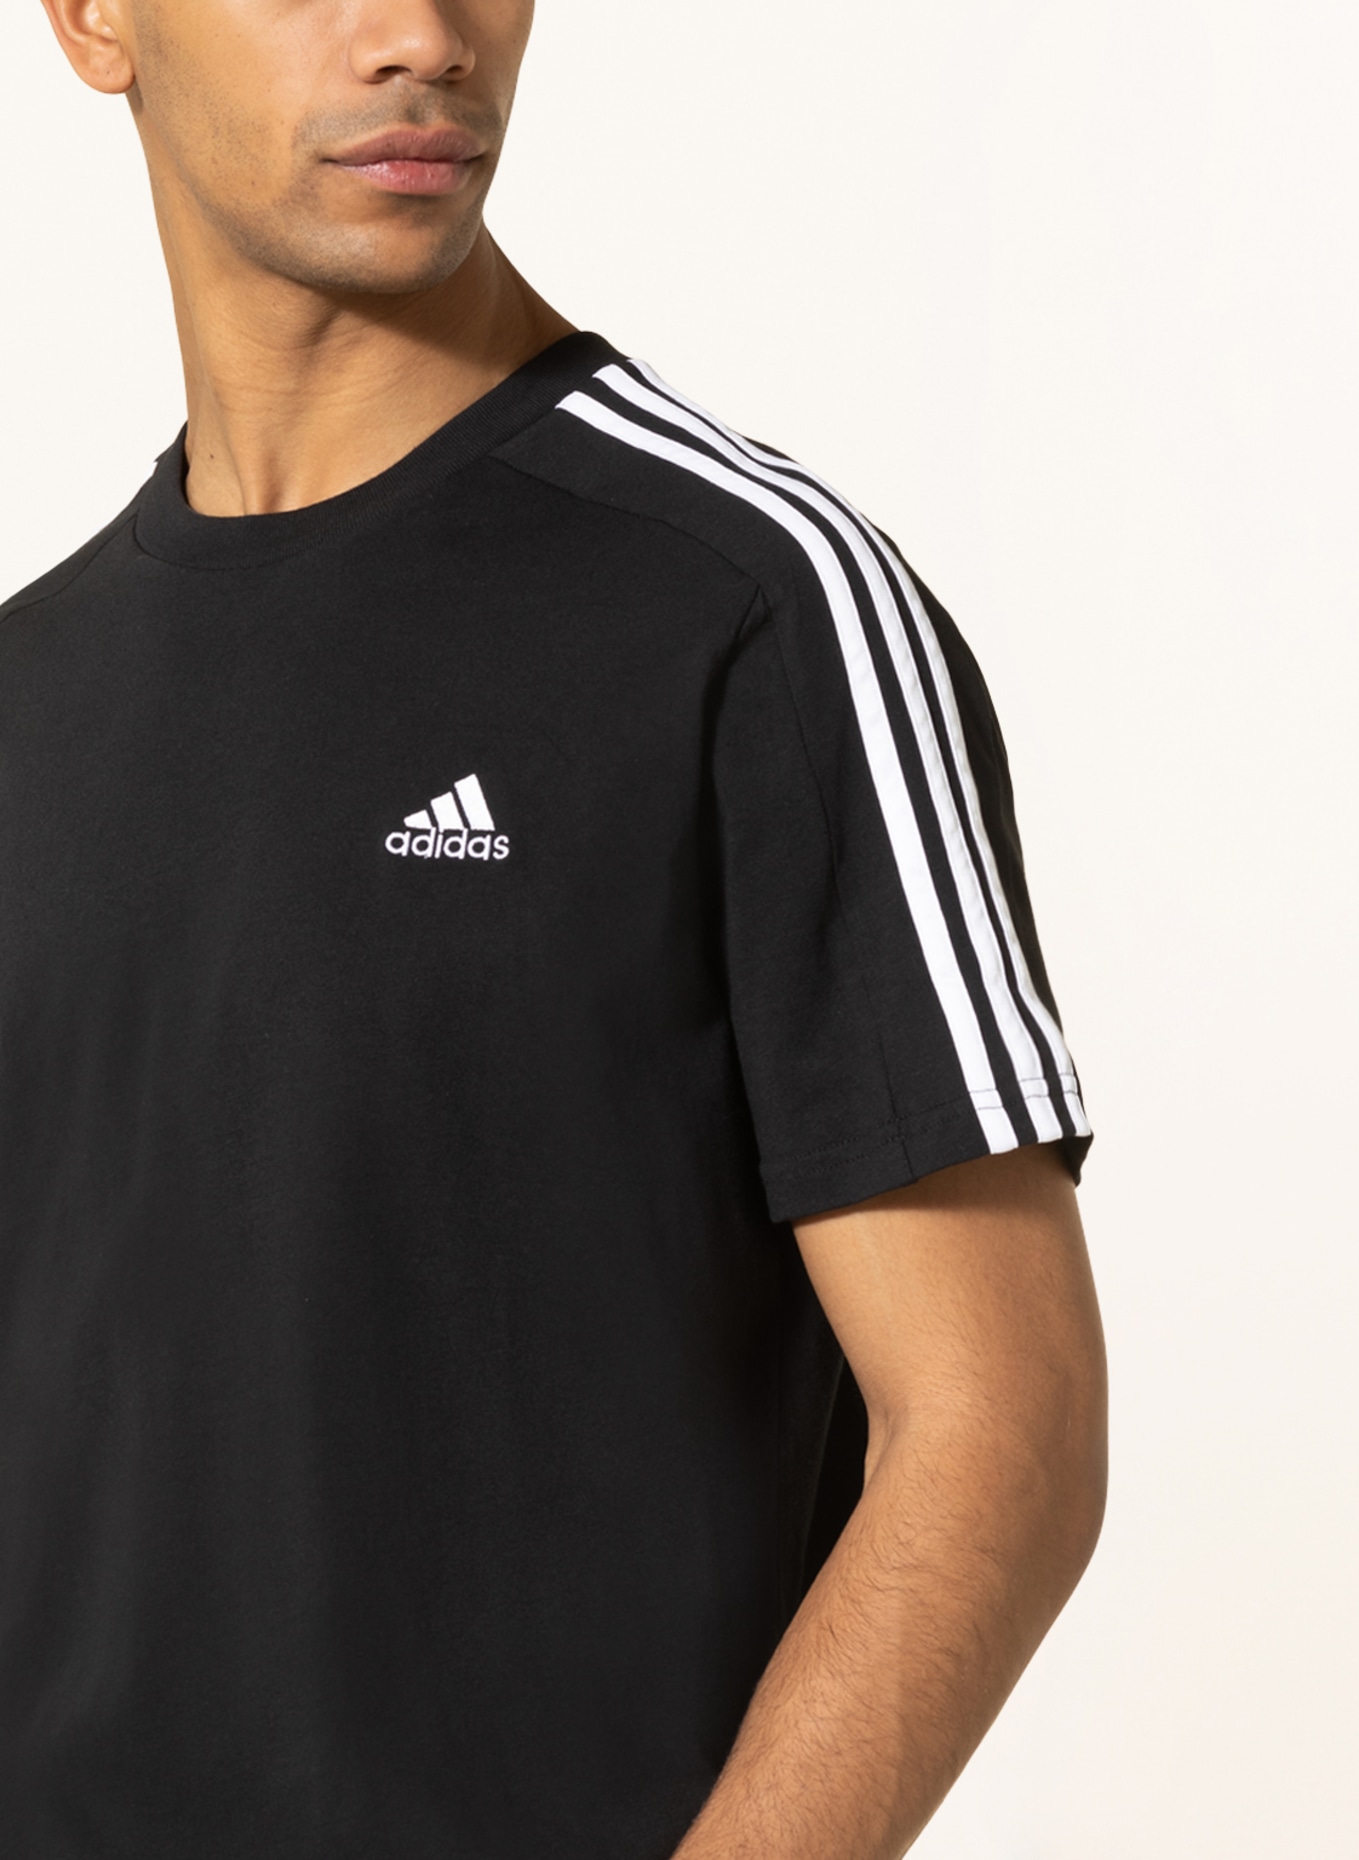 Adidas Originals - Tee Shirt De Sport Femme Foot CE1668 Noir Blanc 